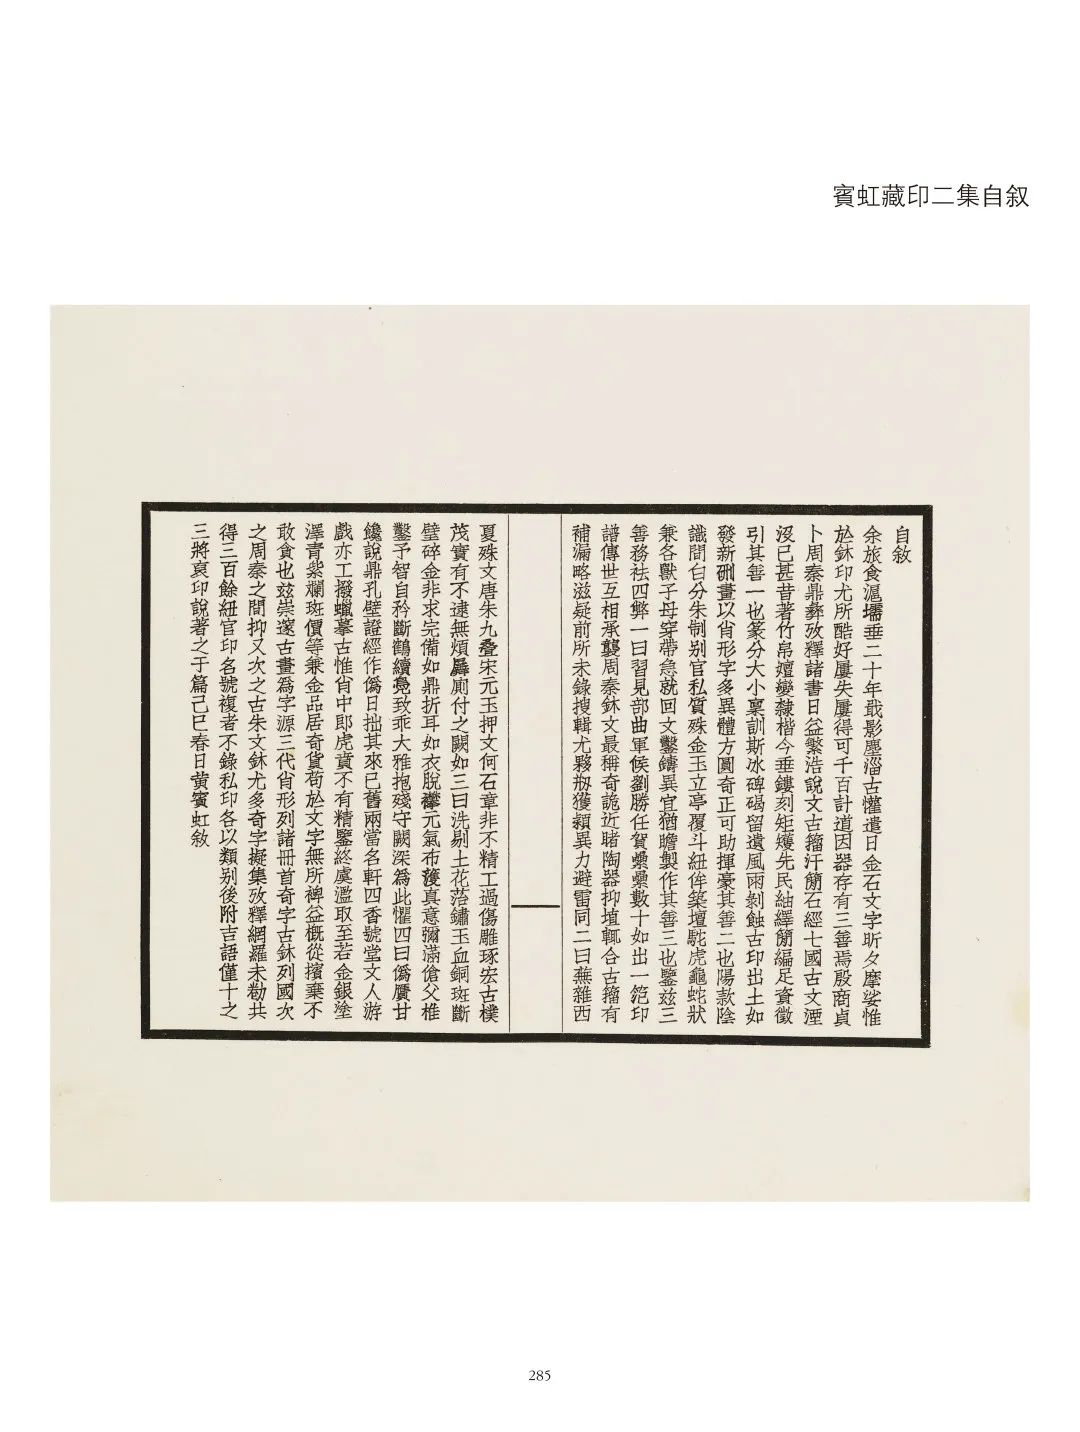 国内最具学术与艺术价值的玺印收藏集合体之一《古物影——黄宾虹古玺印收藏集萃》(图138)